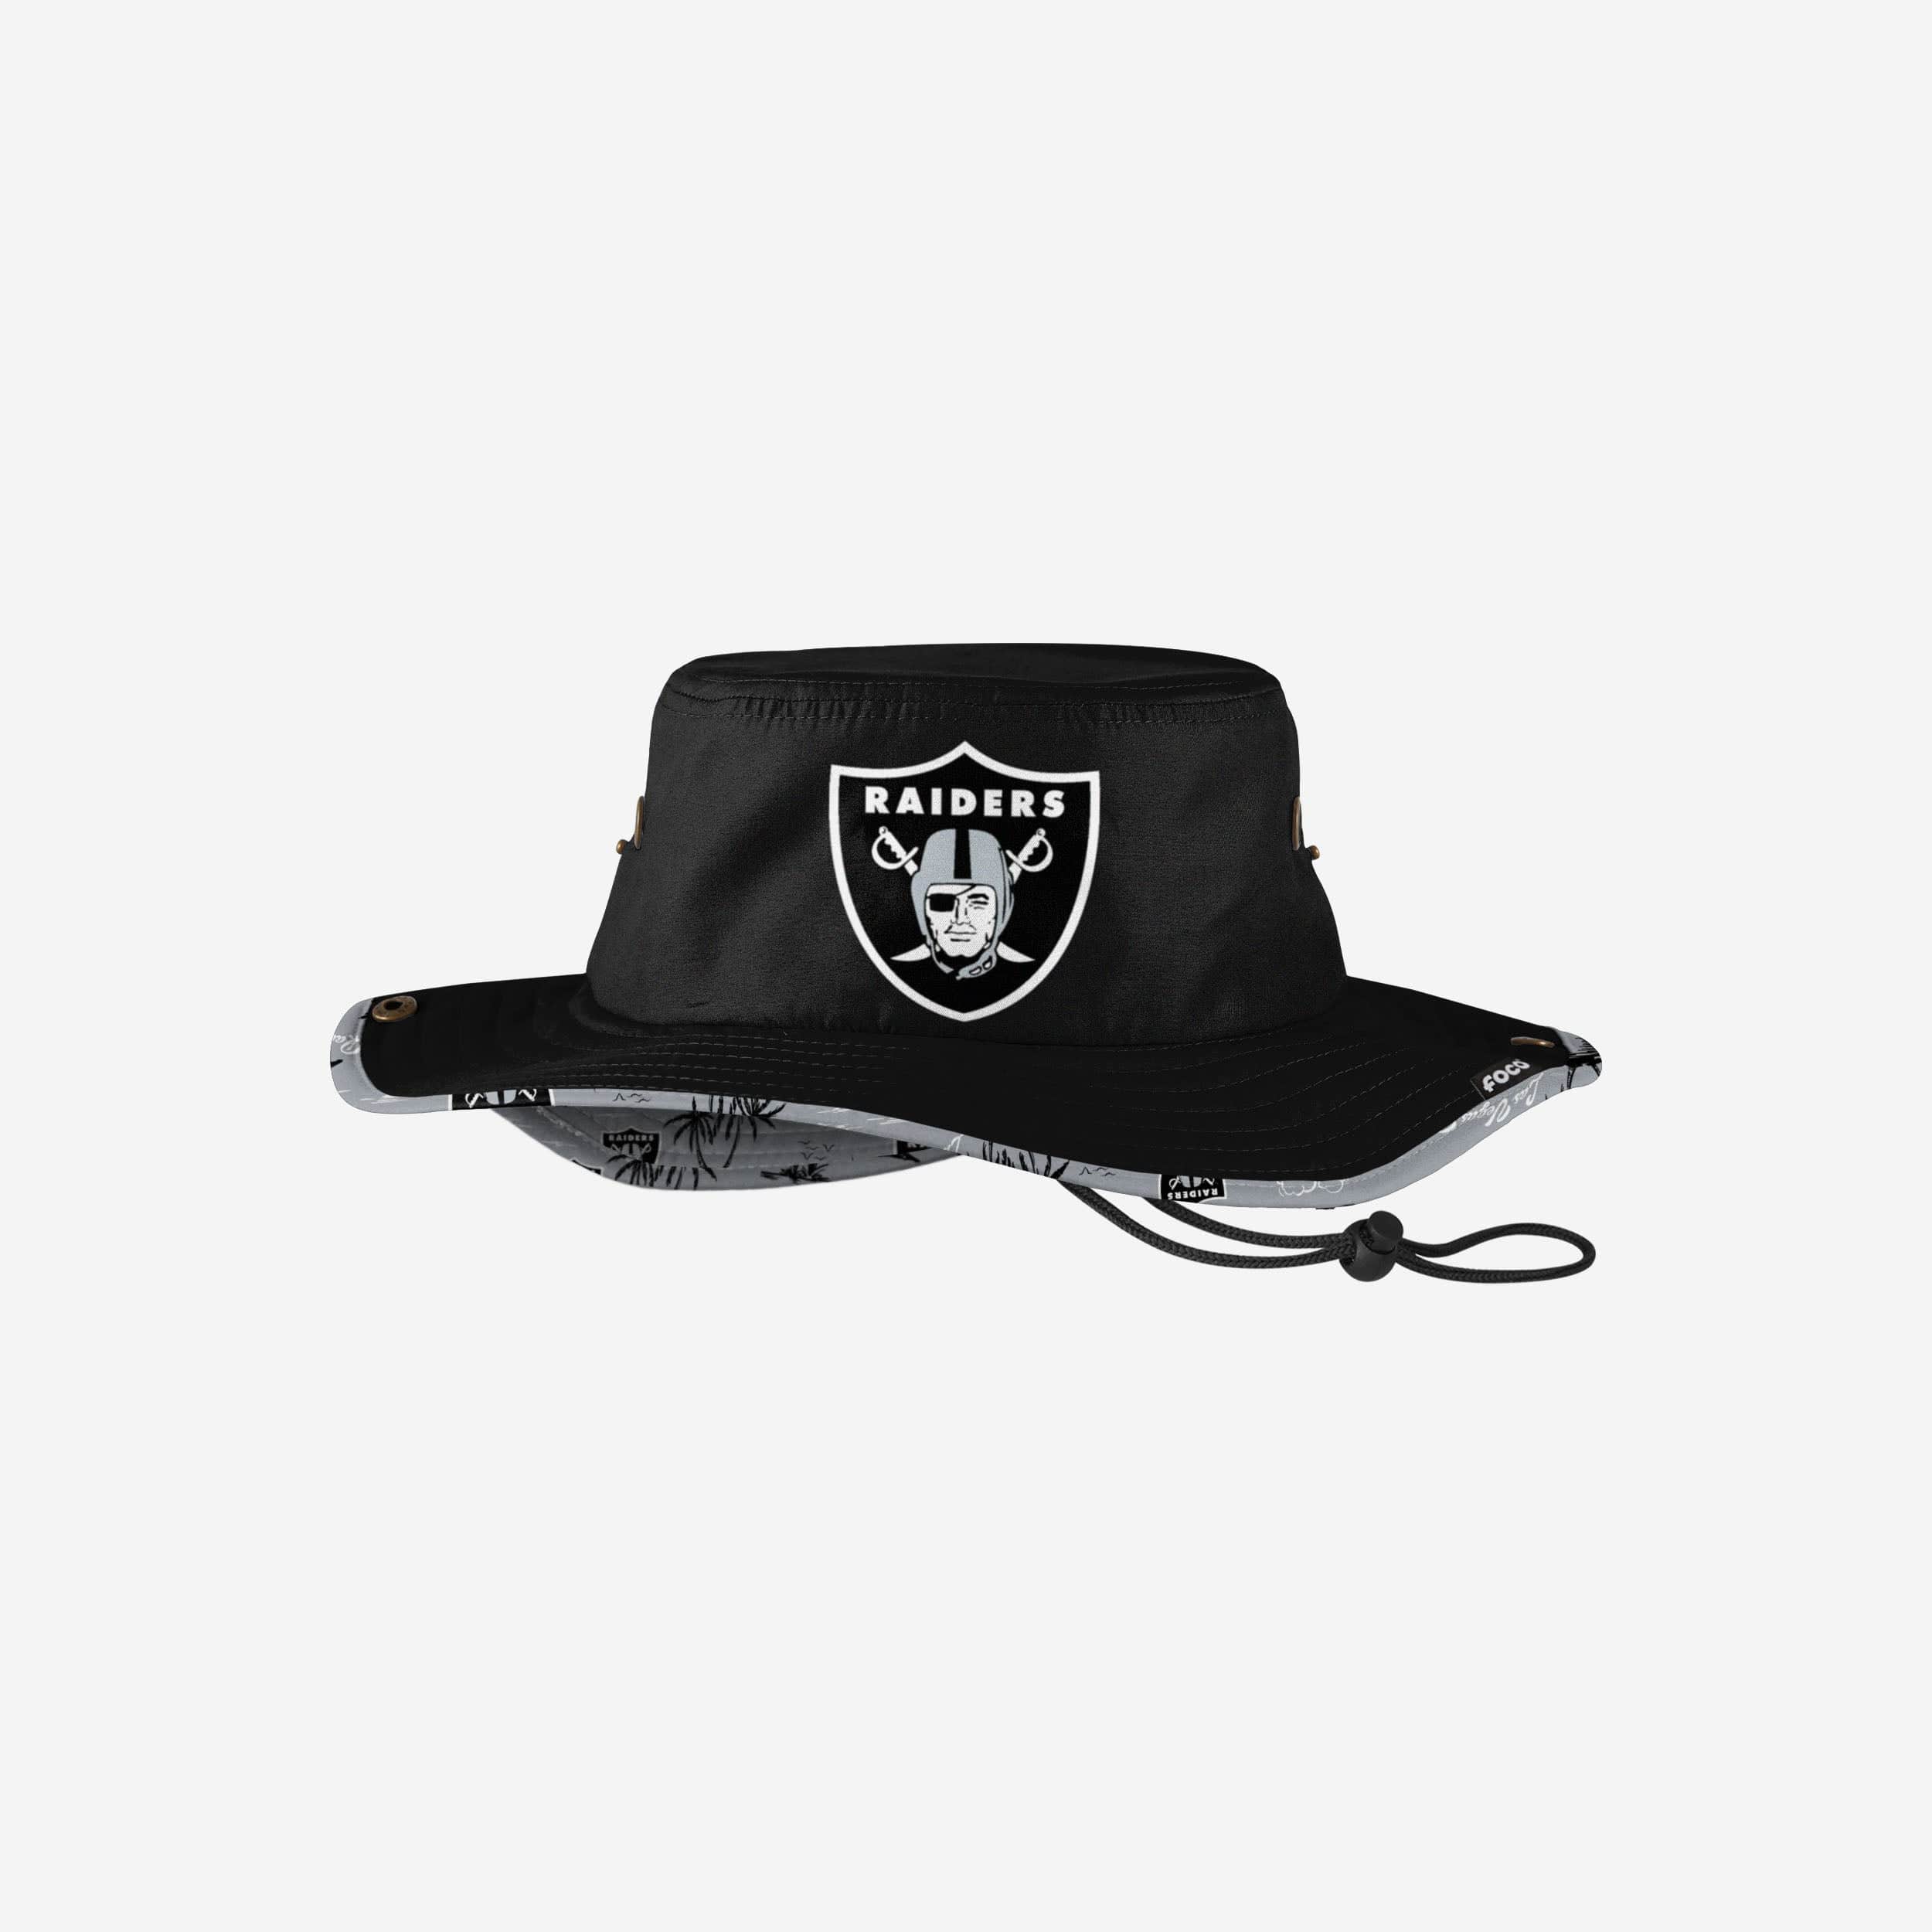 Las Vegas Raiders NFL Womens White Hybrid Boonie Hat